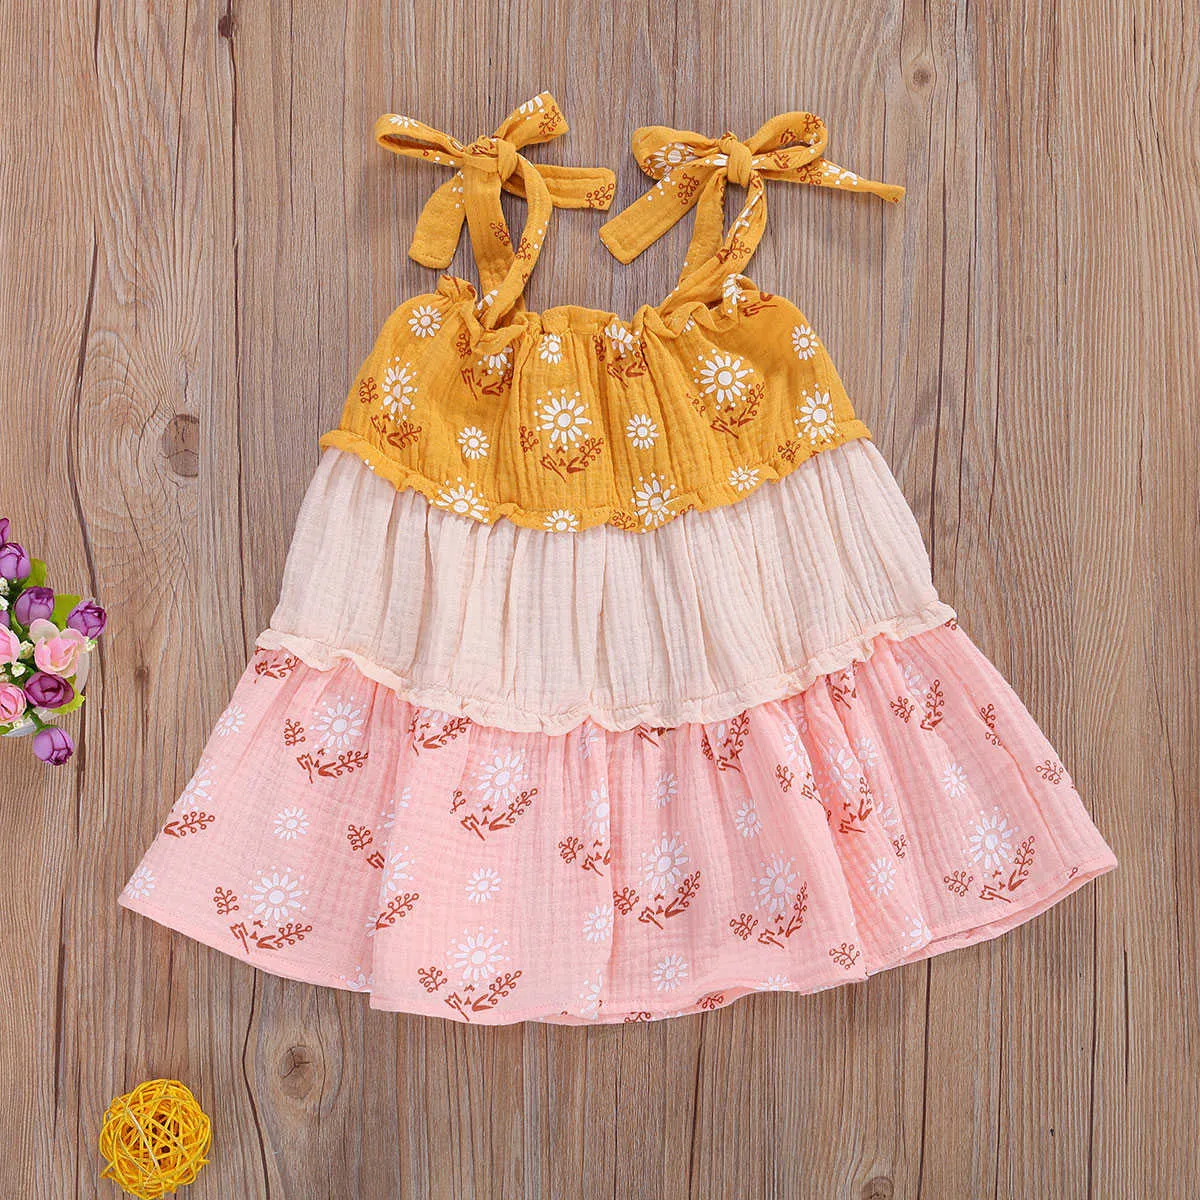 Girl's Dresses Baby Infant Toddler Kid Girls Flower Dress Summer Bohemian Ruffles Dresses For Girls Travel Holiday Costumes